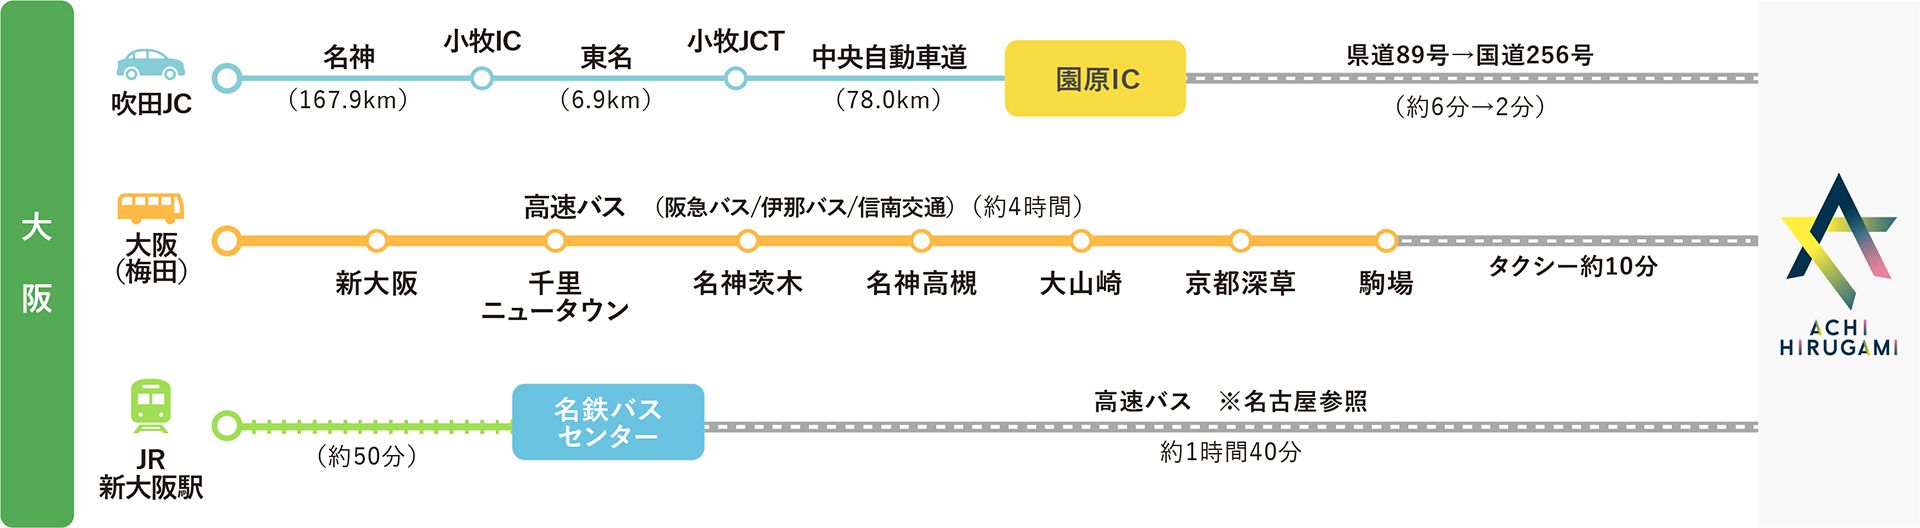 大阪方面からのアクセスMAP